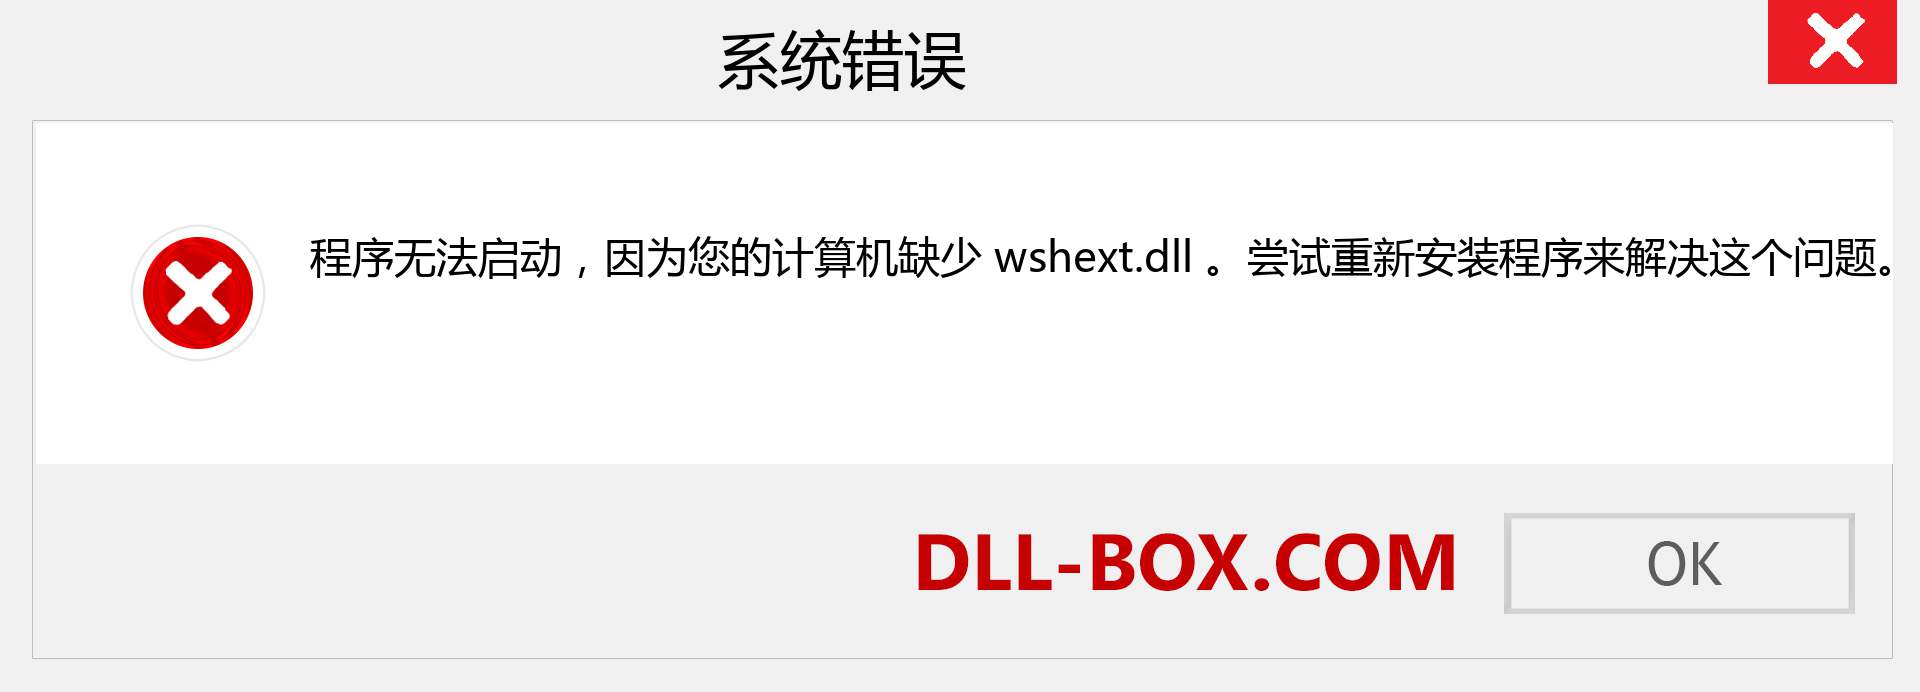 wshext.dll 文件丢失？。 适用于 Windows 7、8、10 的下载 - 修复 Windows、照片、图像上的 wshext dll 丢失错误